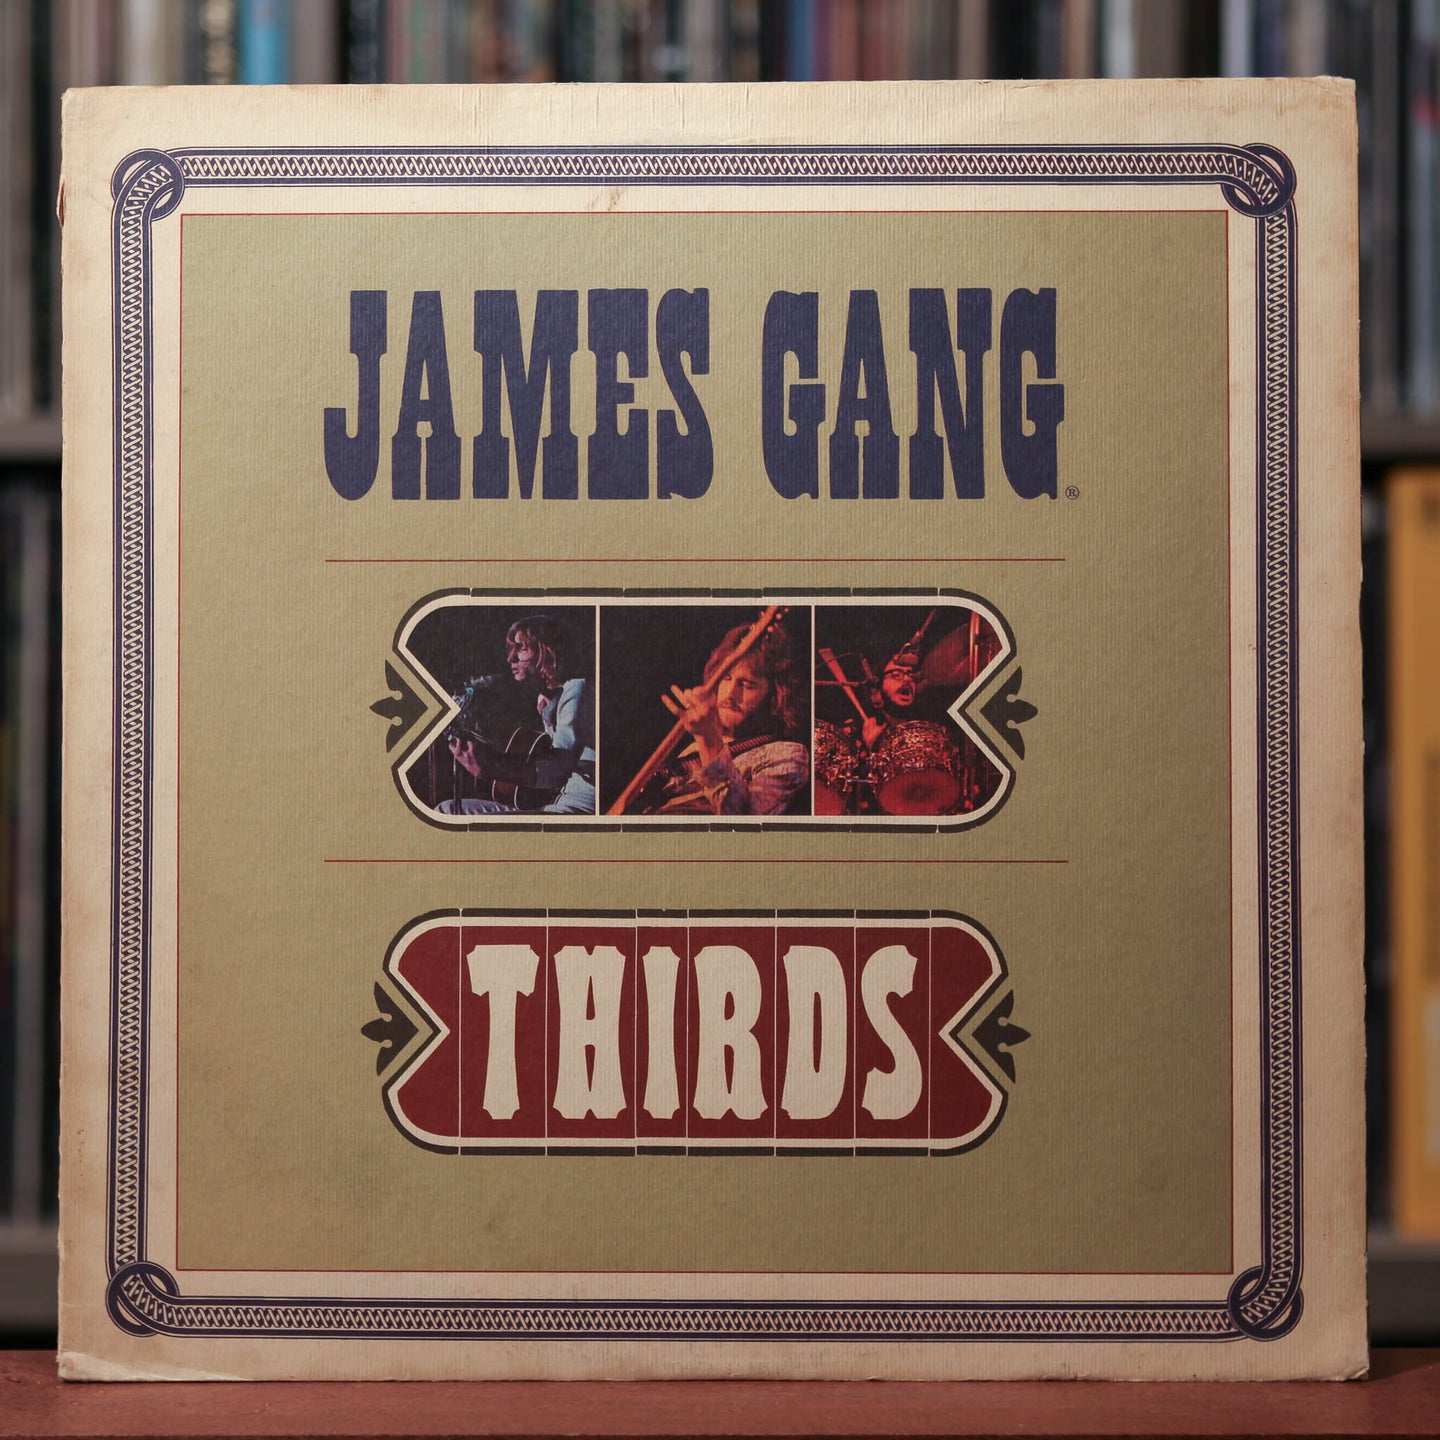 James Gang - Thirds - 1971 ABC, VG+/VG